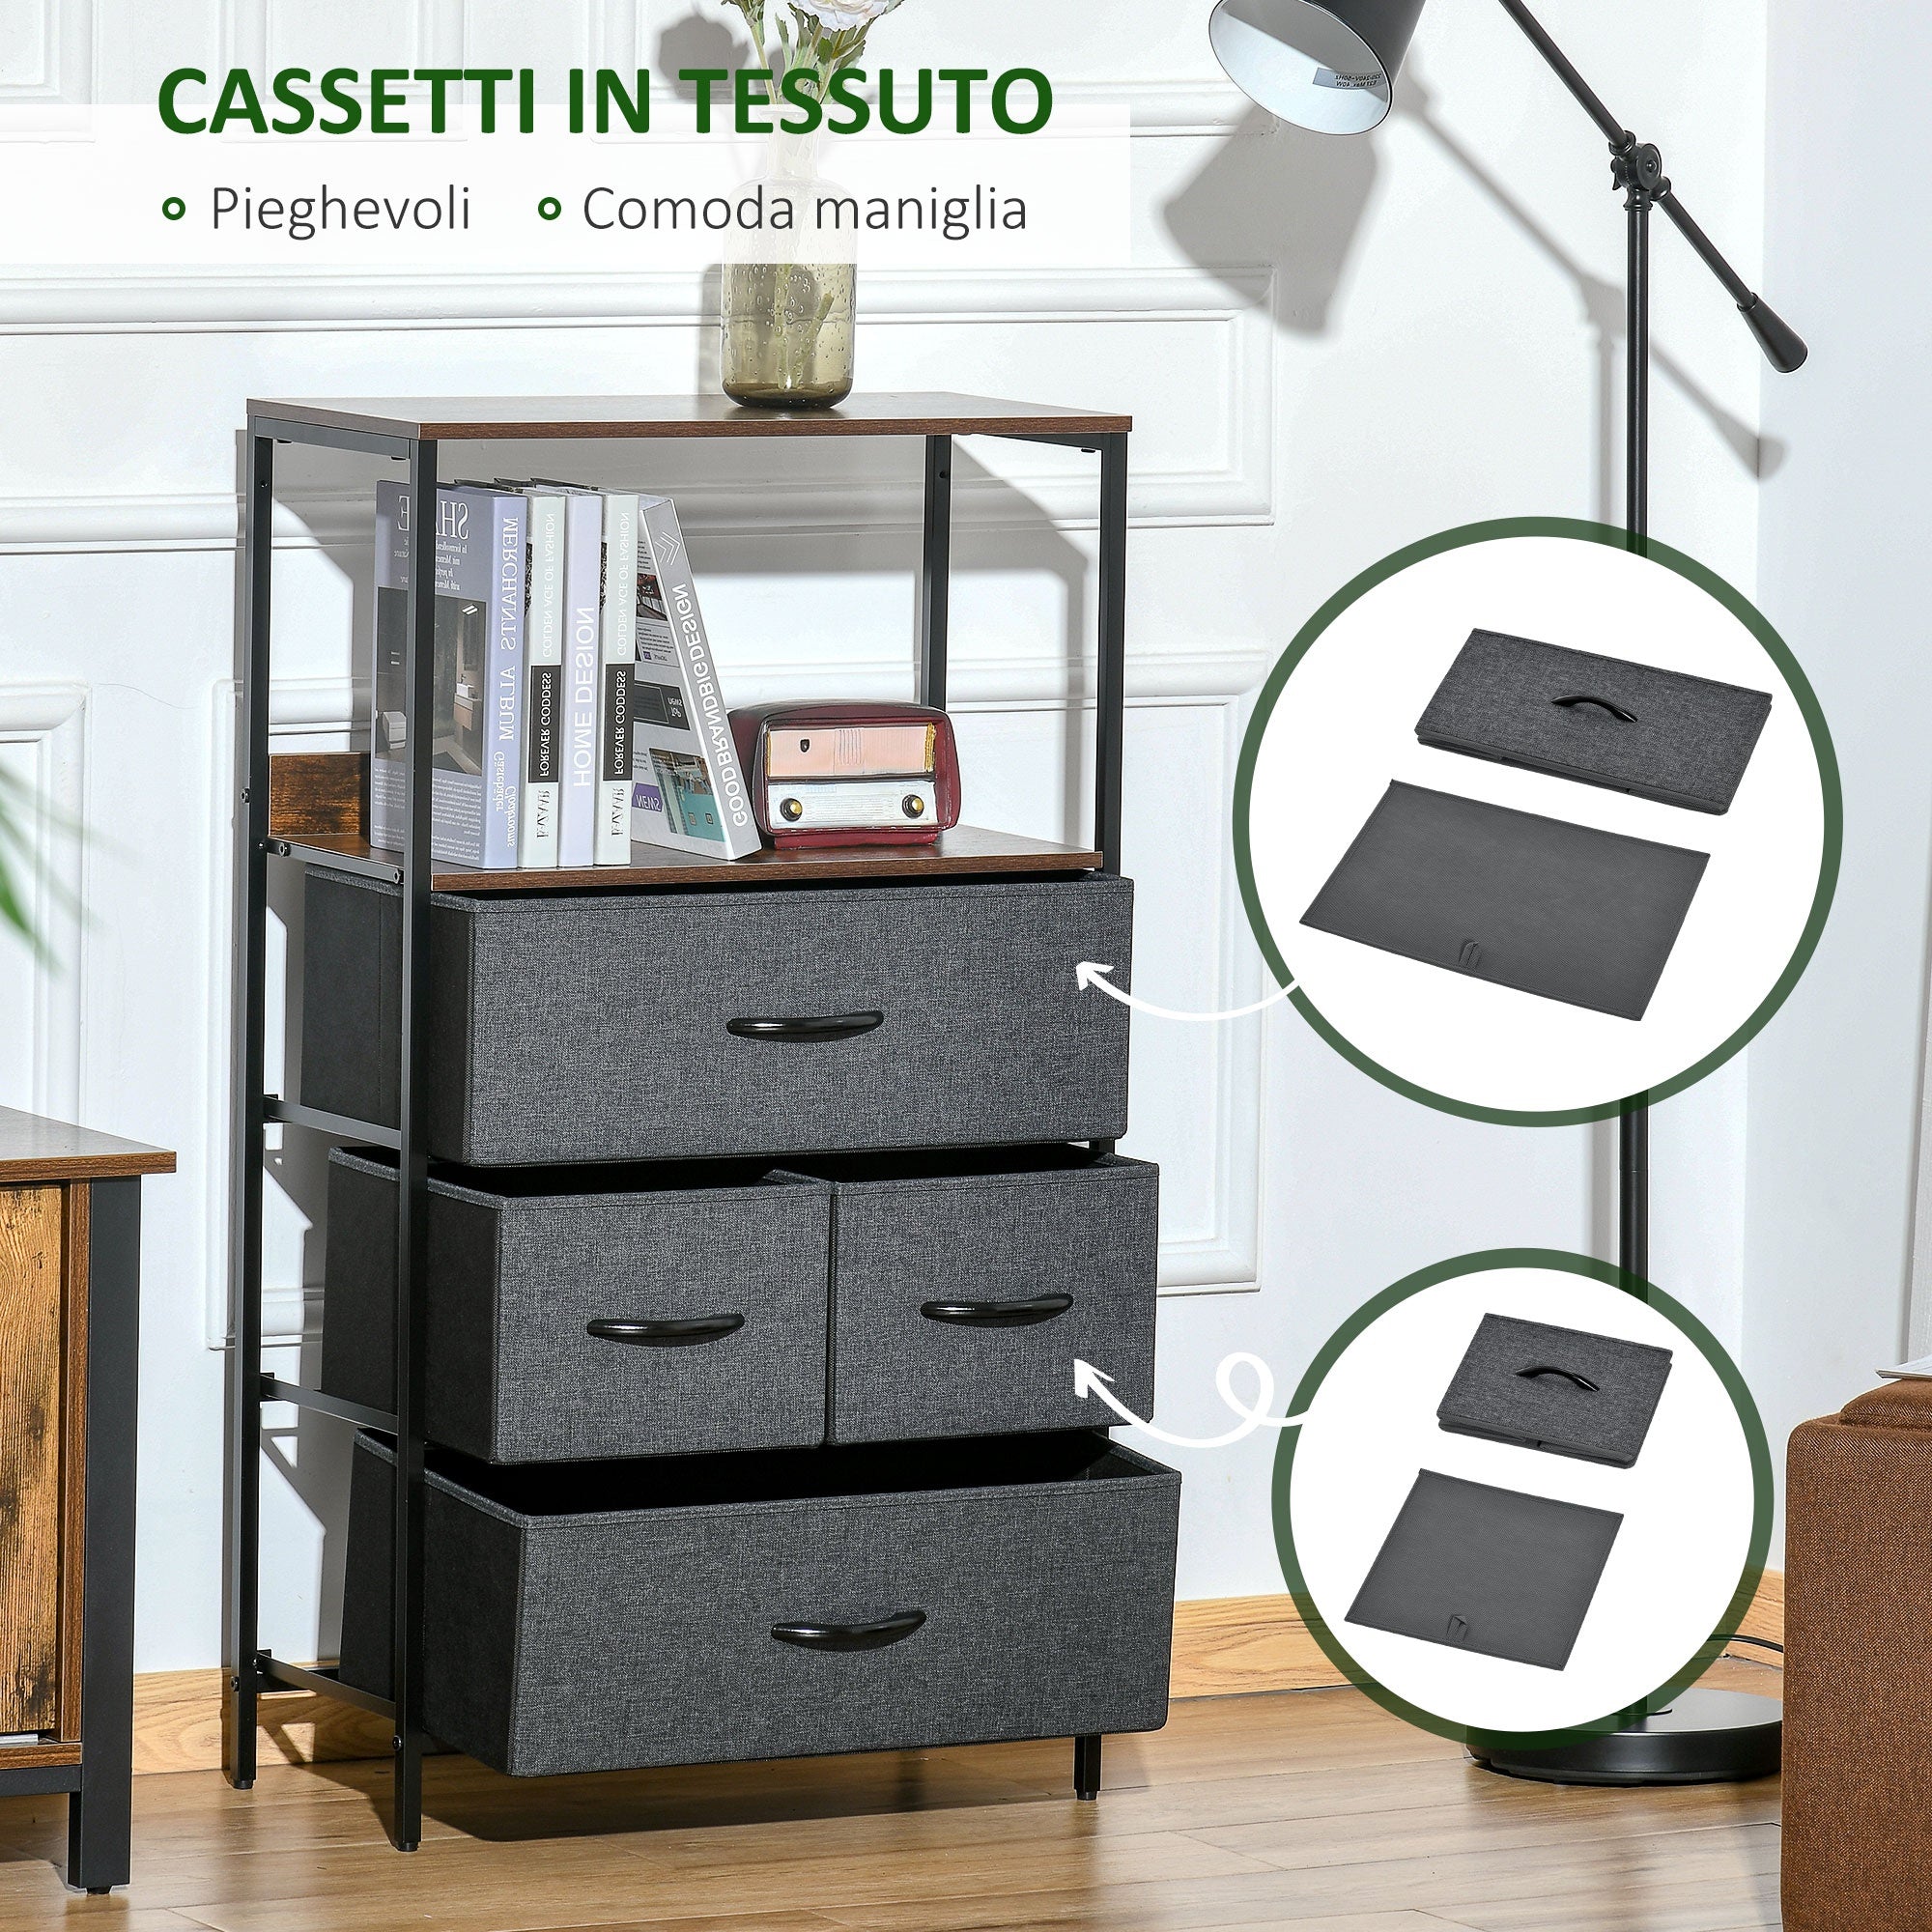 Cassettiera Multiuso con 4 Cassetti in Tessuto 58x29x103 cm Marrone